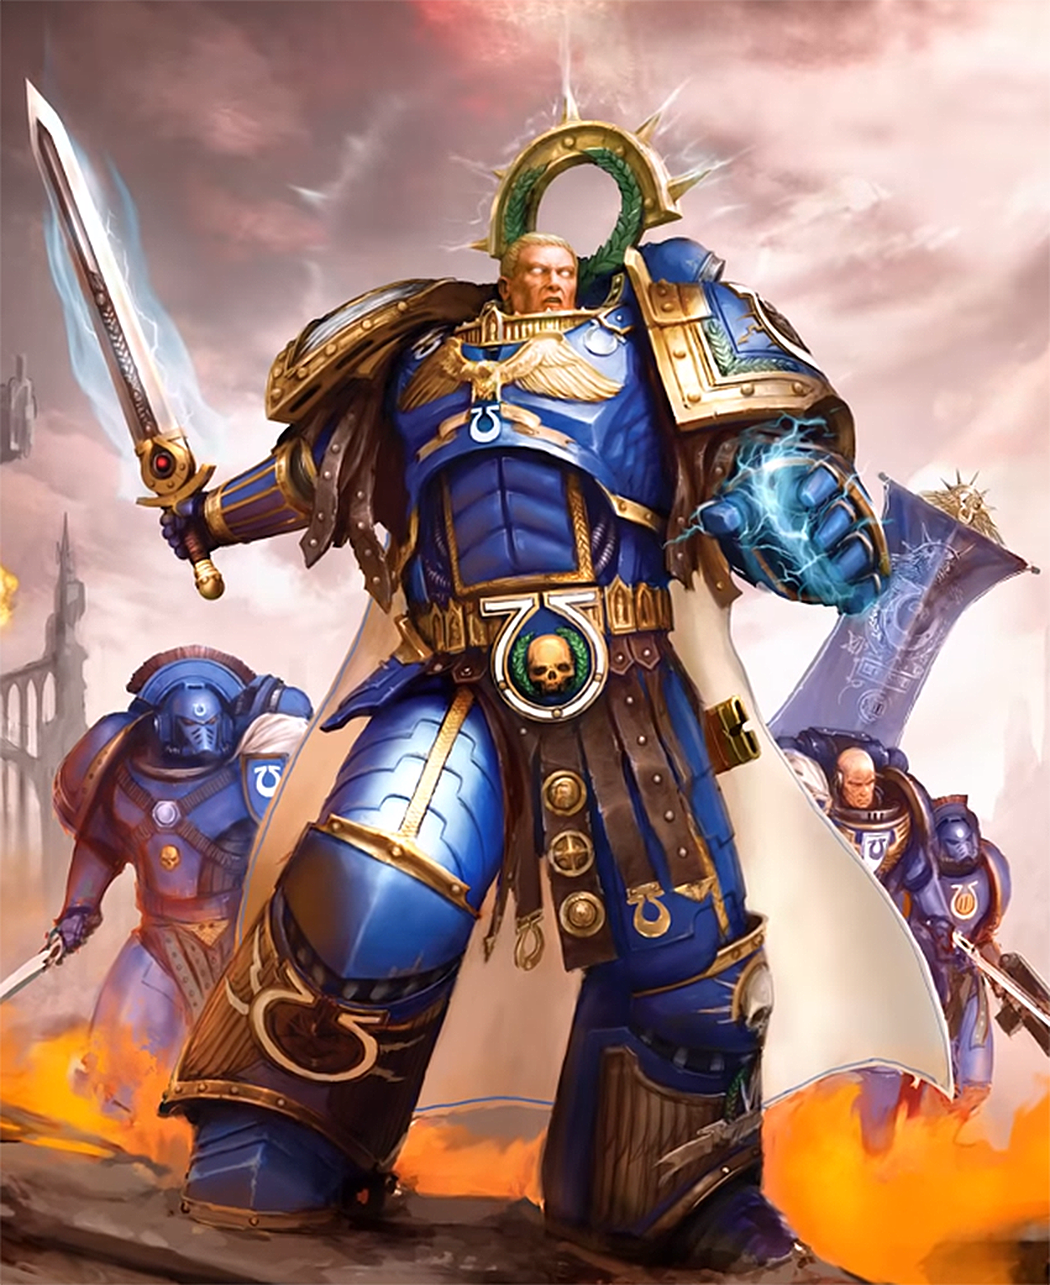 Empire Grand Master, Warhammer Wiki